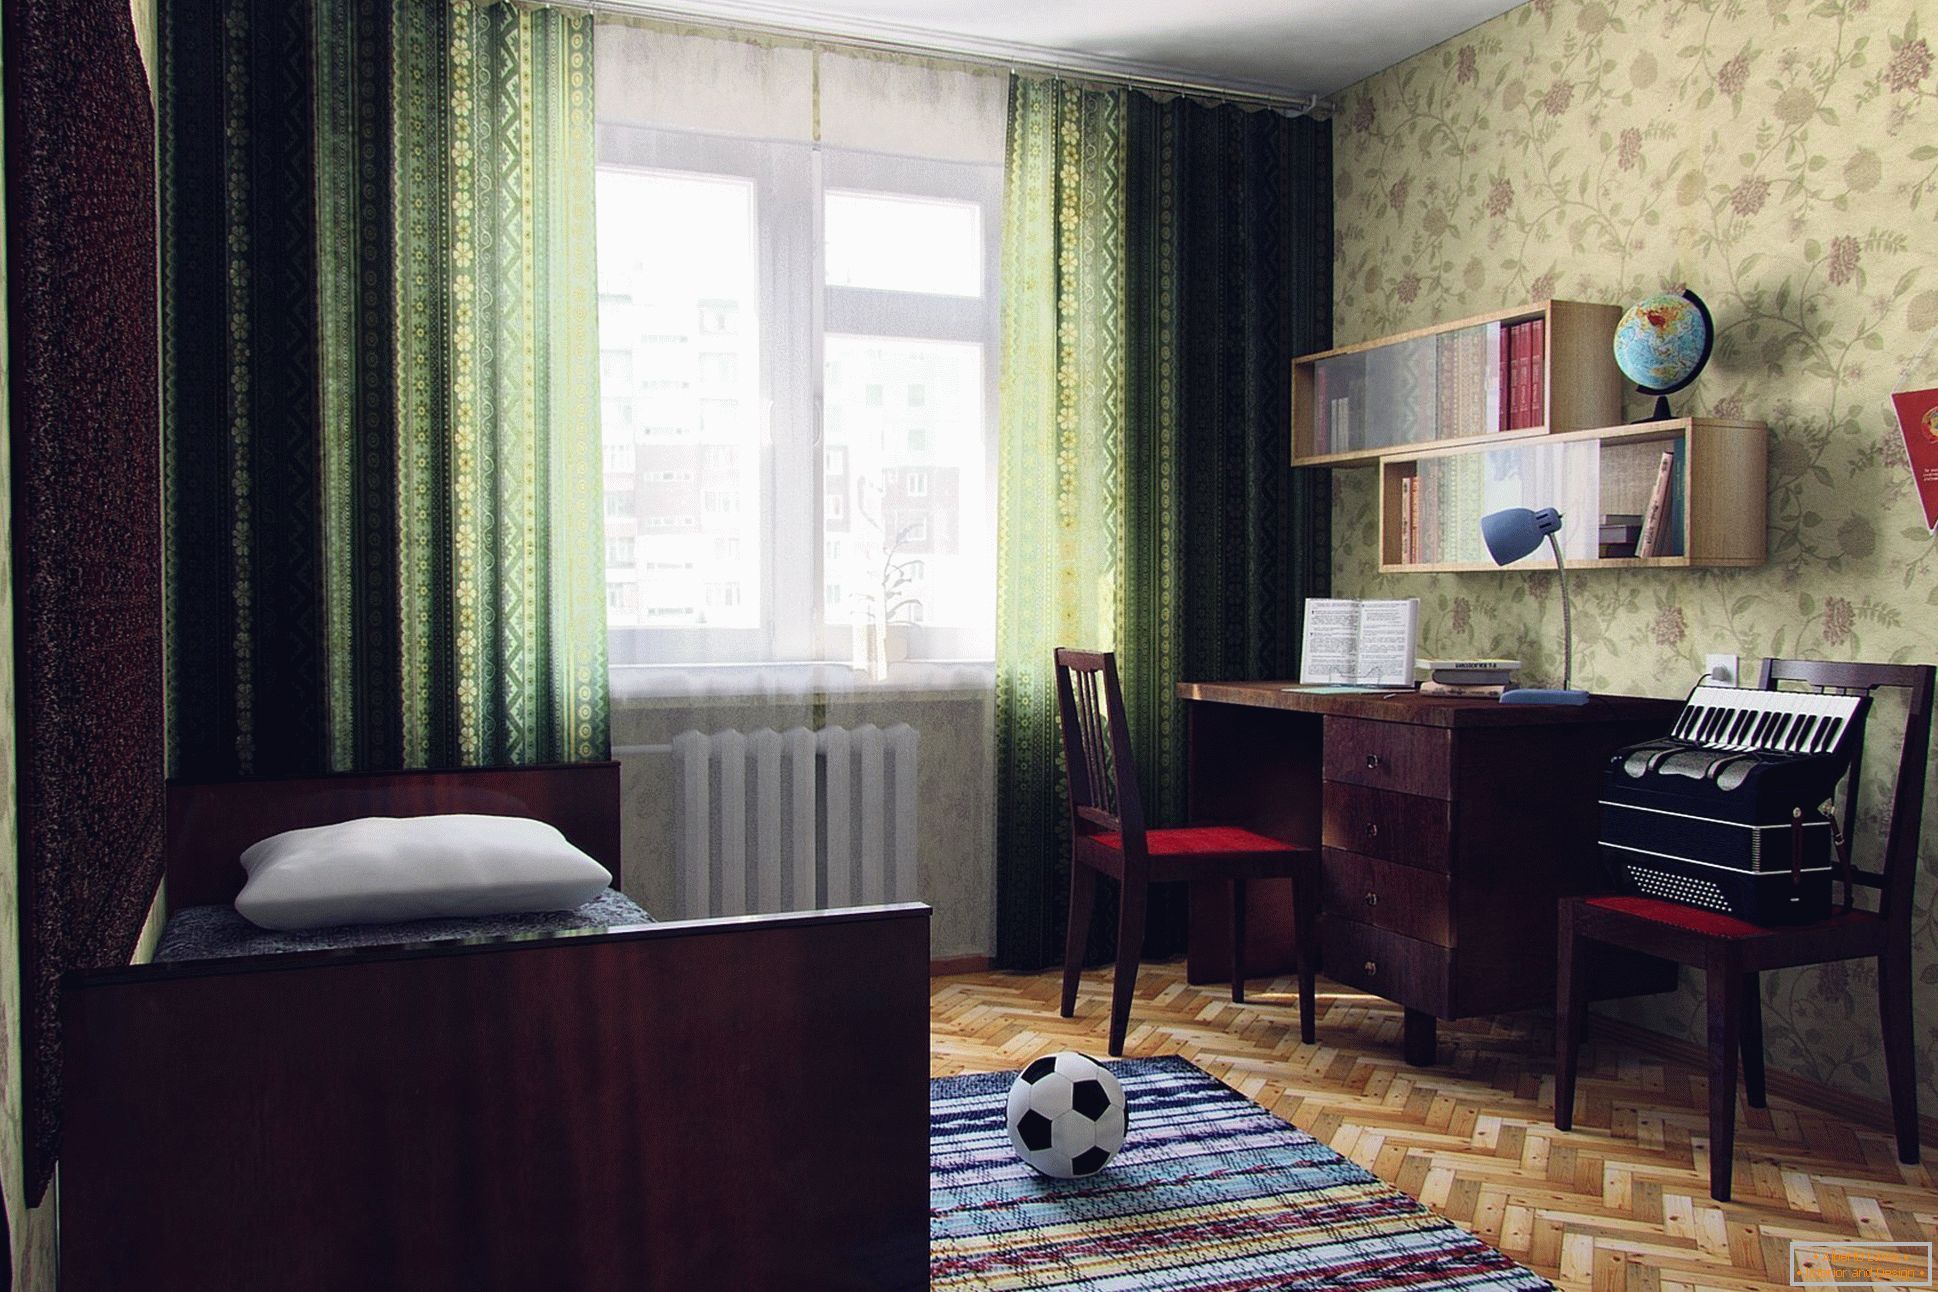 La camera da letto sovietica